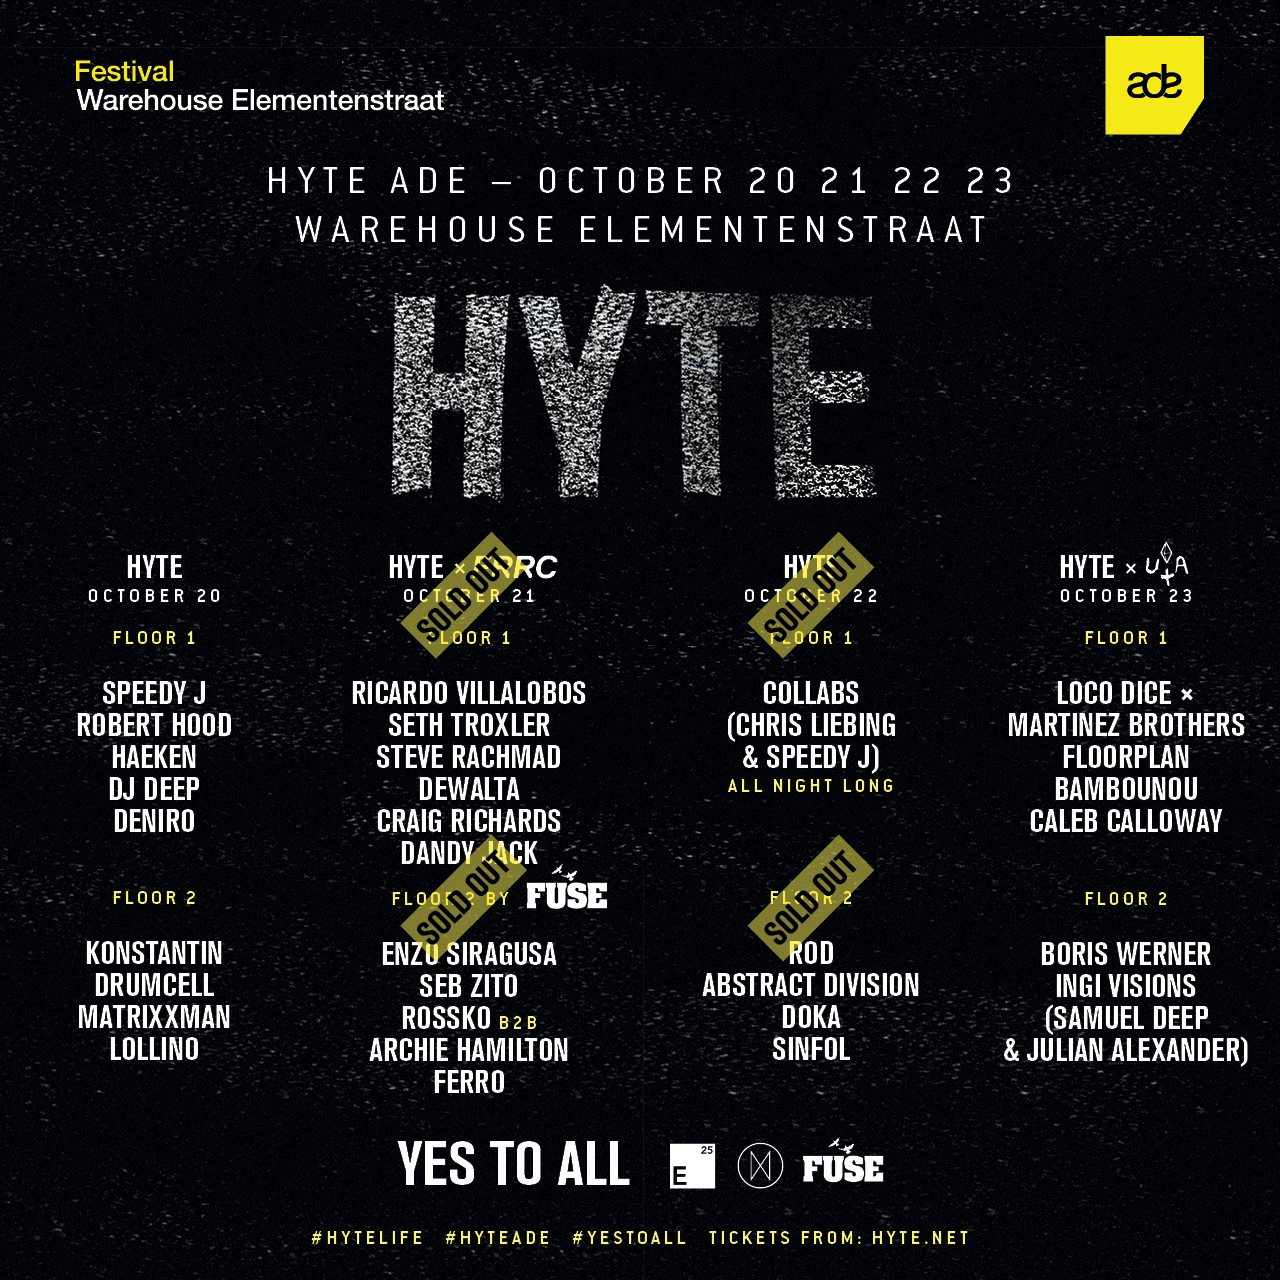 HYTE ADE with Speedy J, Robert Hood, Haeken, Drumcell, Matrixxman - Flyer front